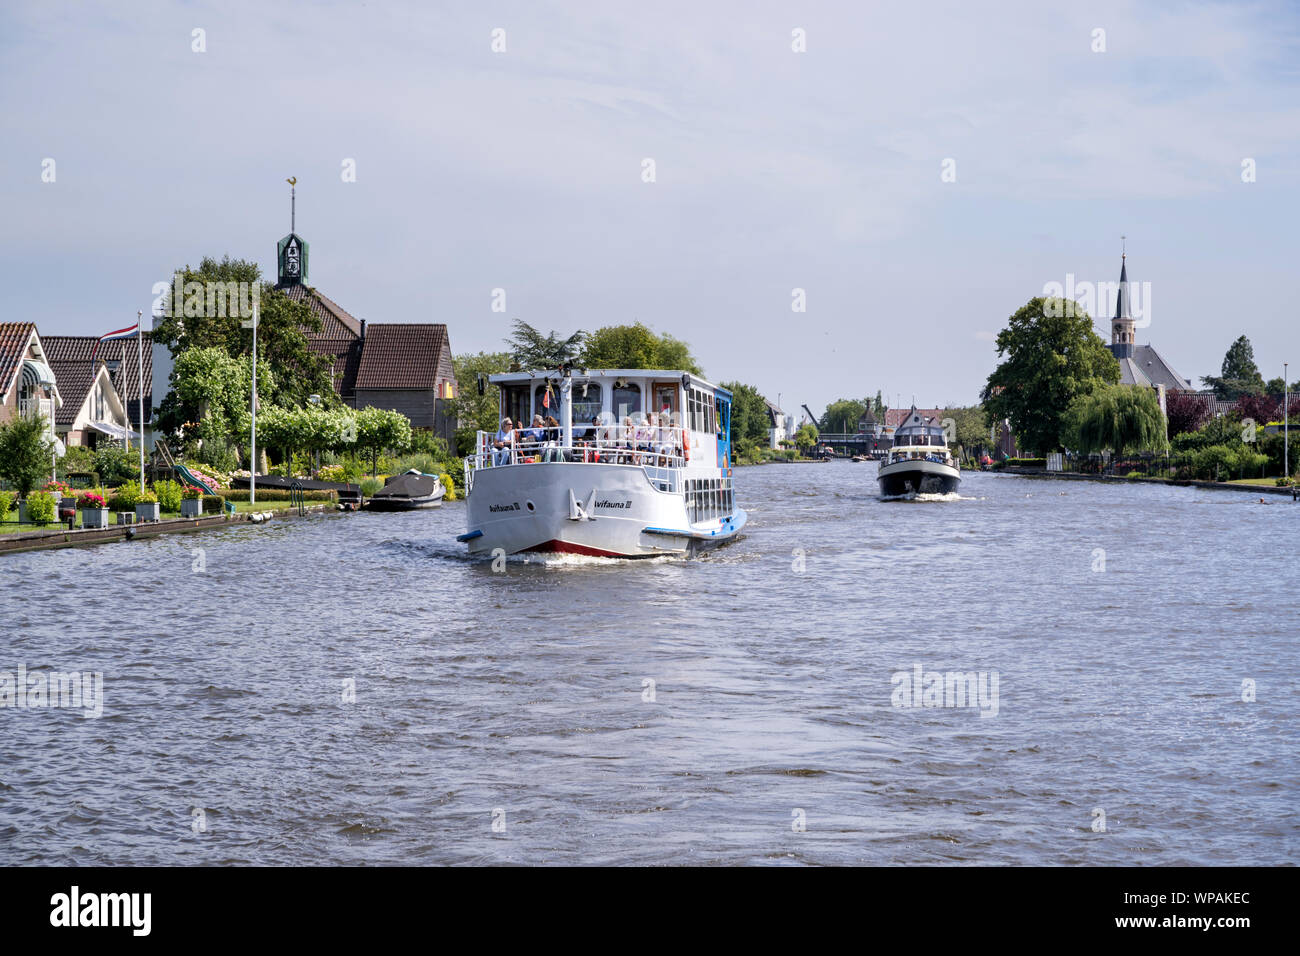 Bateau d'Excursion AVIVAUNA III sur canal cruise. Van der Valk est la plus grande chaîne d'hospitalité néerlandaise et exploite également le Parc des Oiseaux de l'avifaune. Banque D'Images